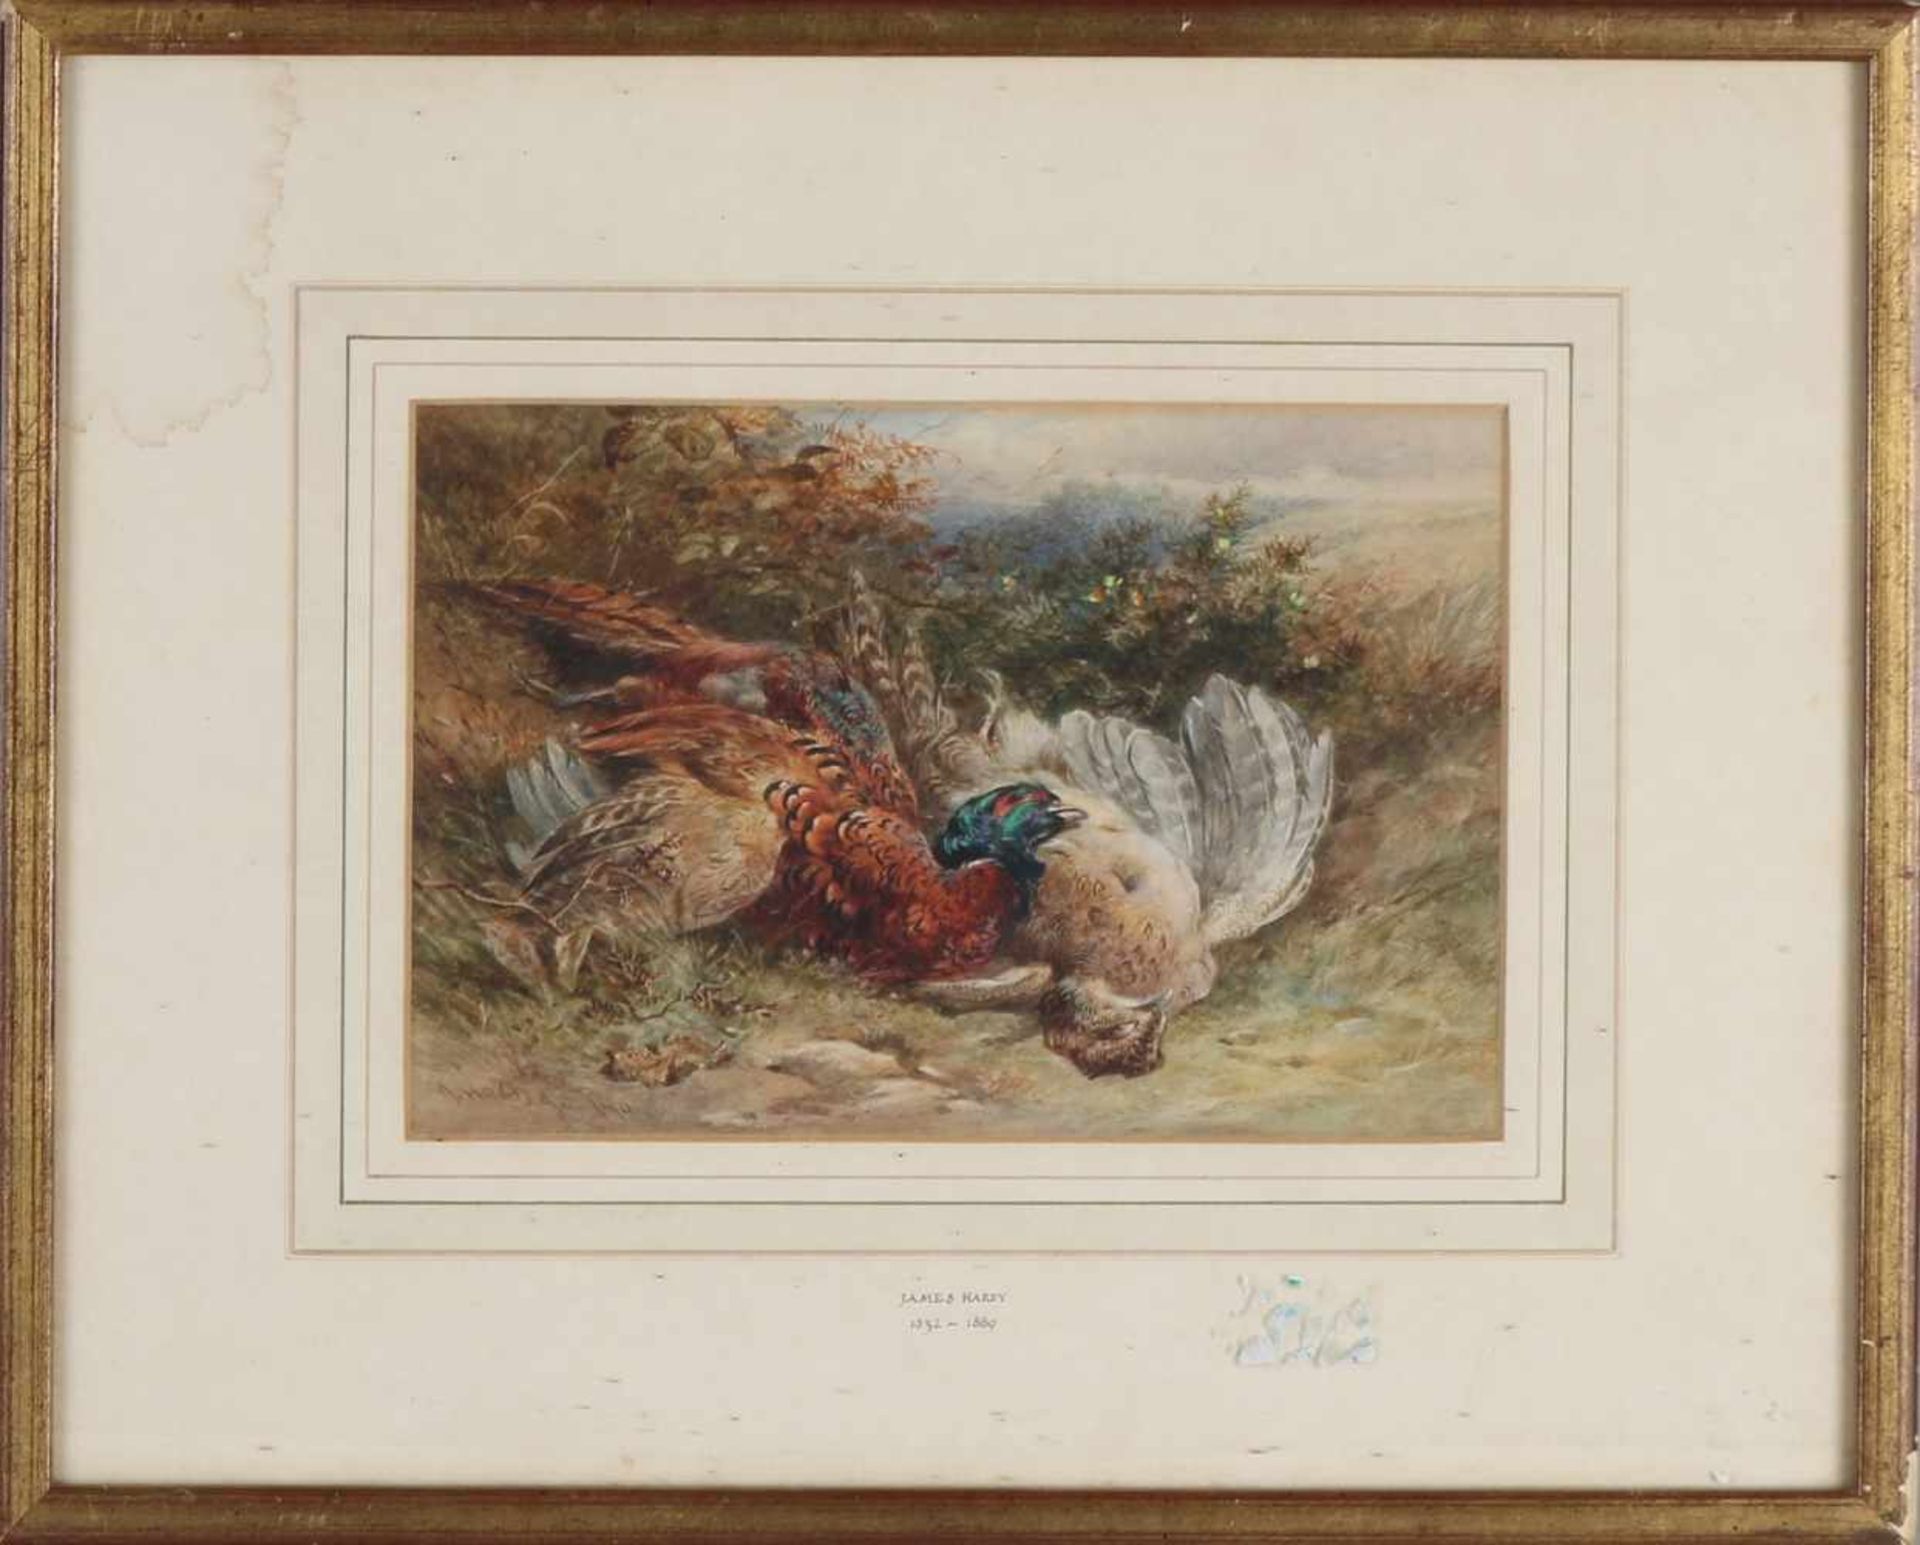 James Hardy. 1832 - 1889. Englische Schule. Wilde Szene, zwei Fasane. Aquarell auf Papier. - Bild 2 aus 2